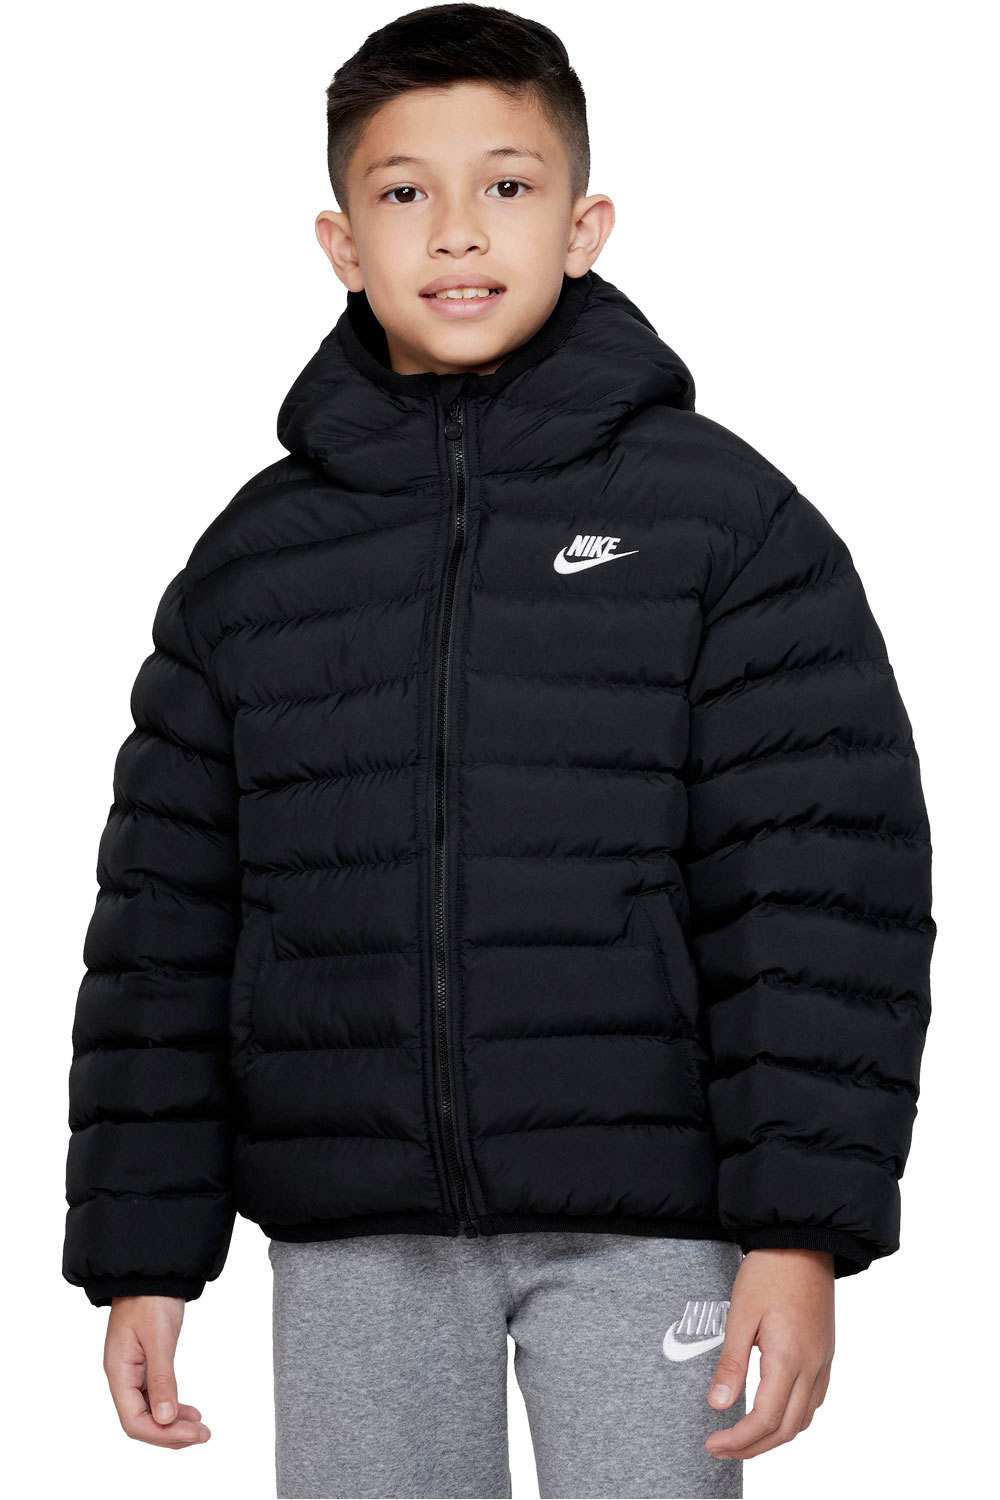 Nike chaqueta niño K NSW LOW SYNFL HD JKT vista frontal